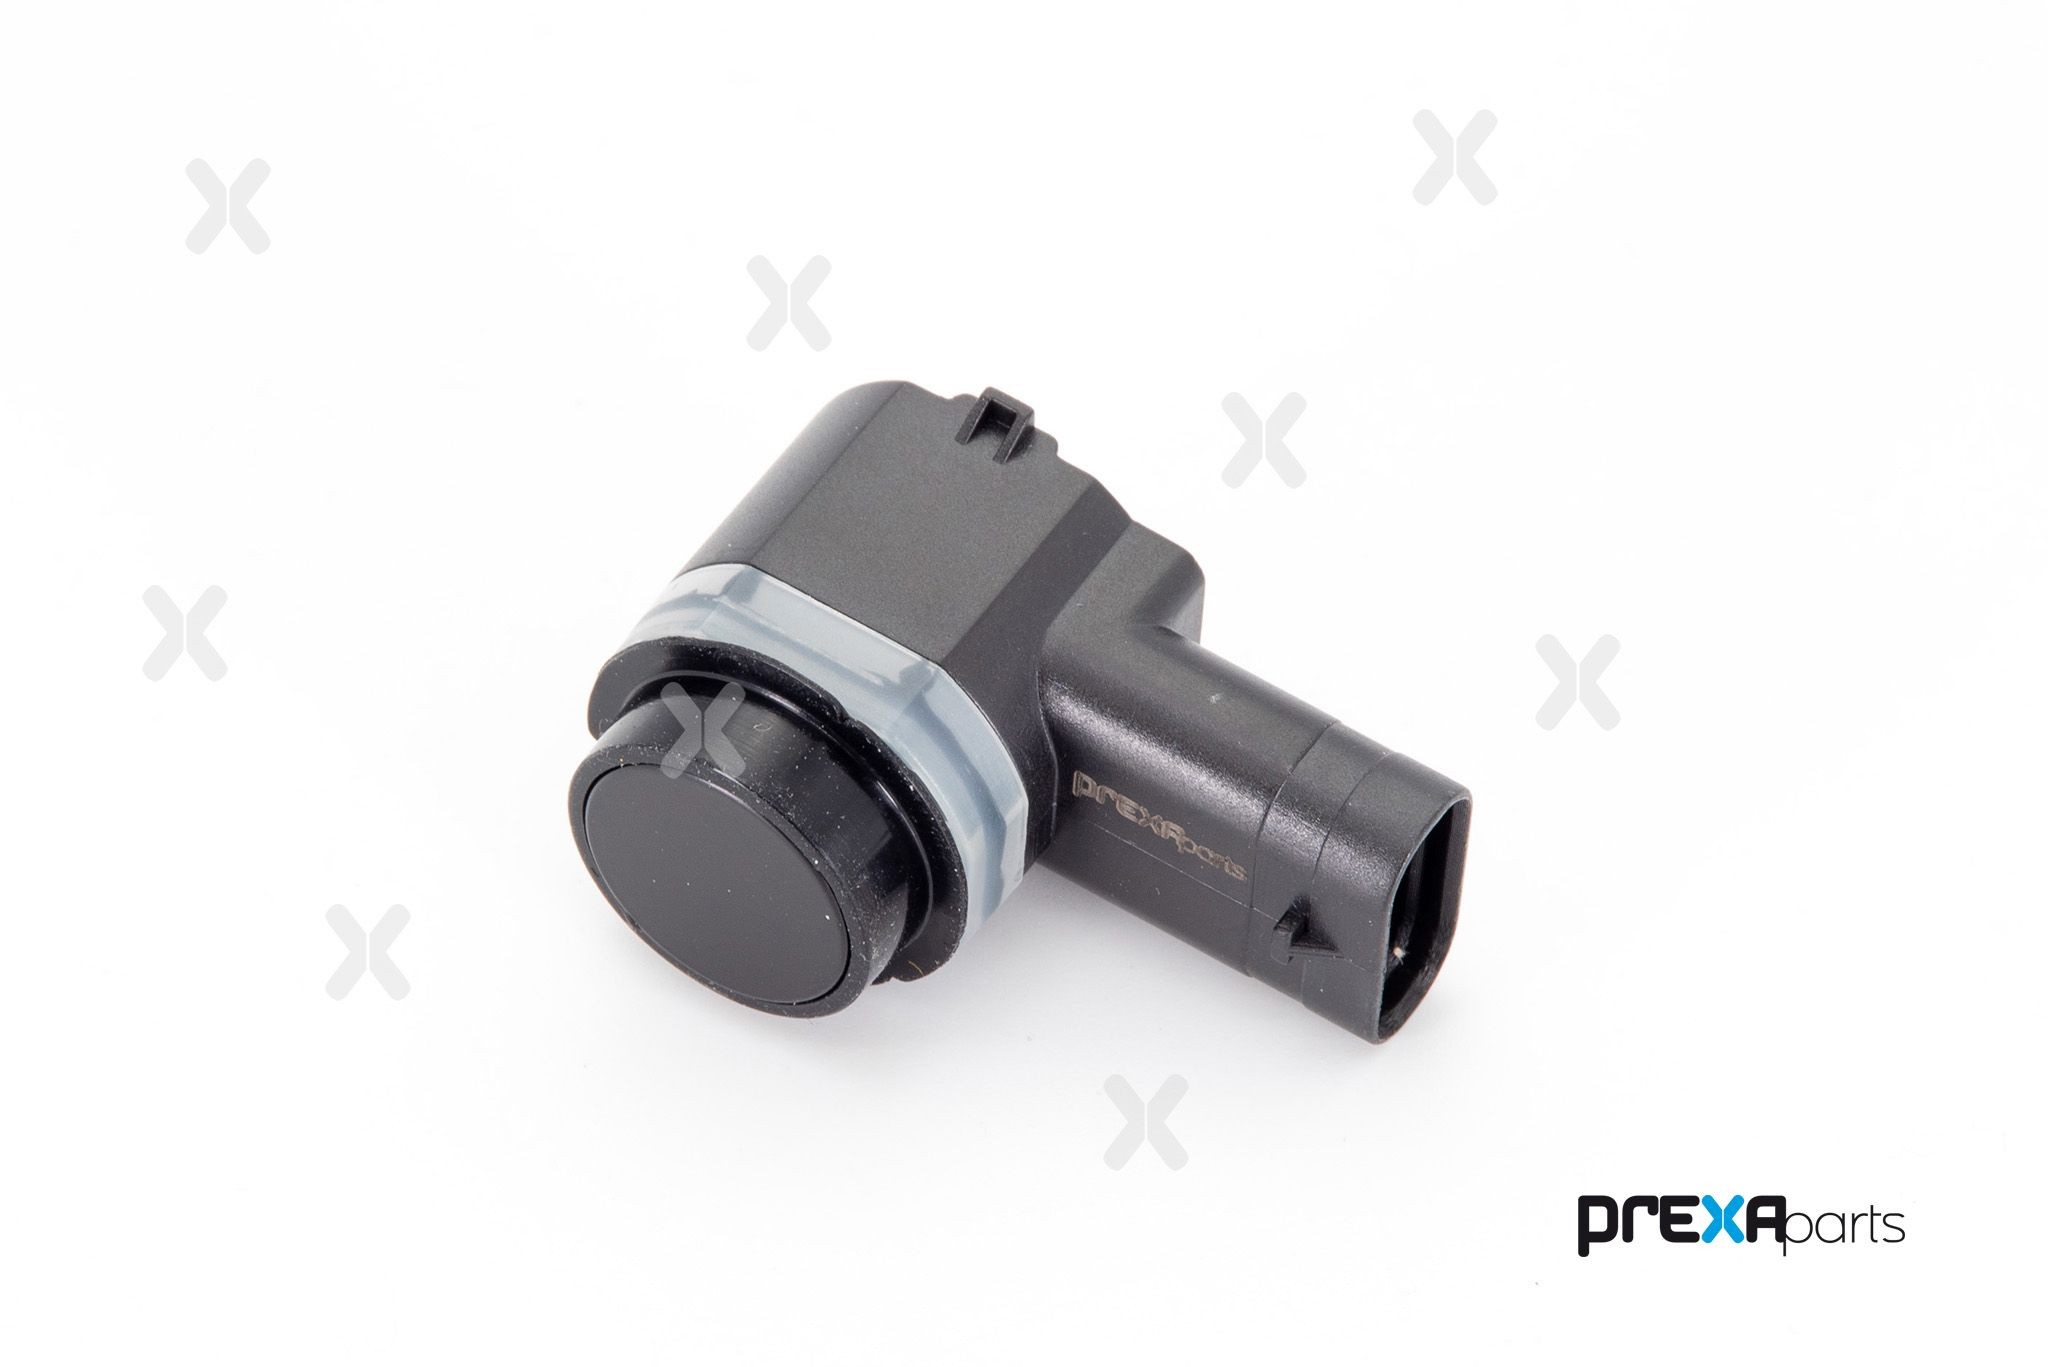 PREXAparts P703009 Parking sensor 51903464